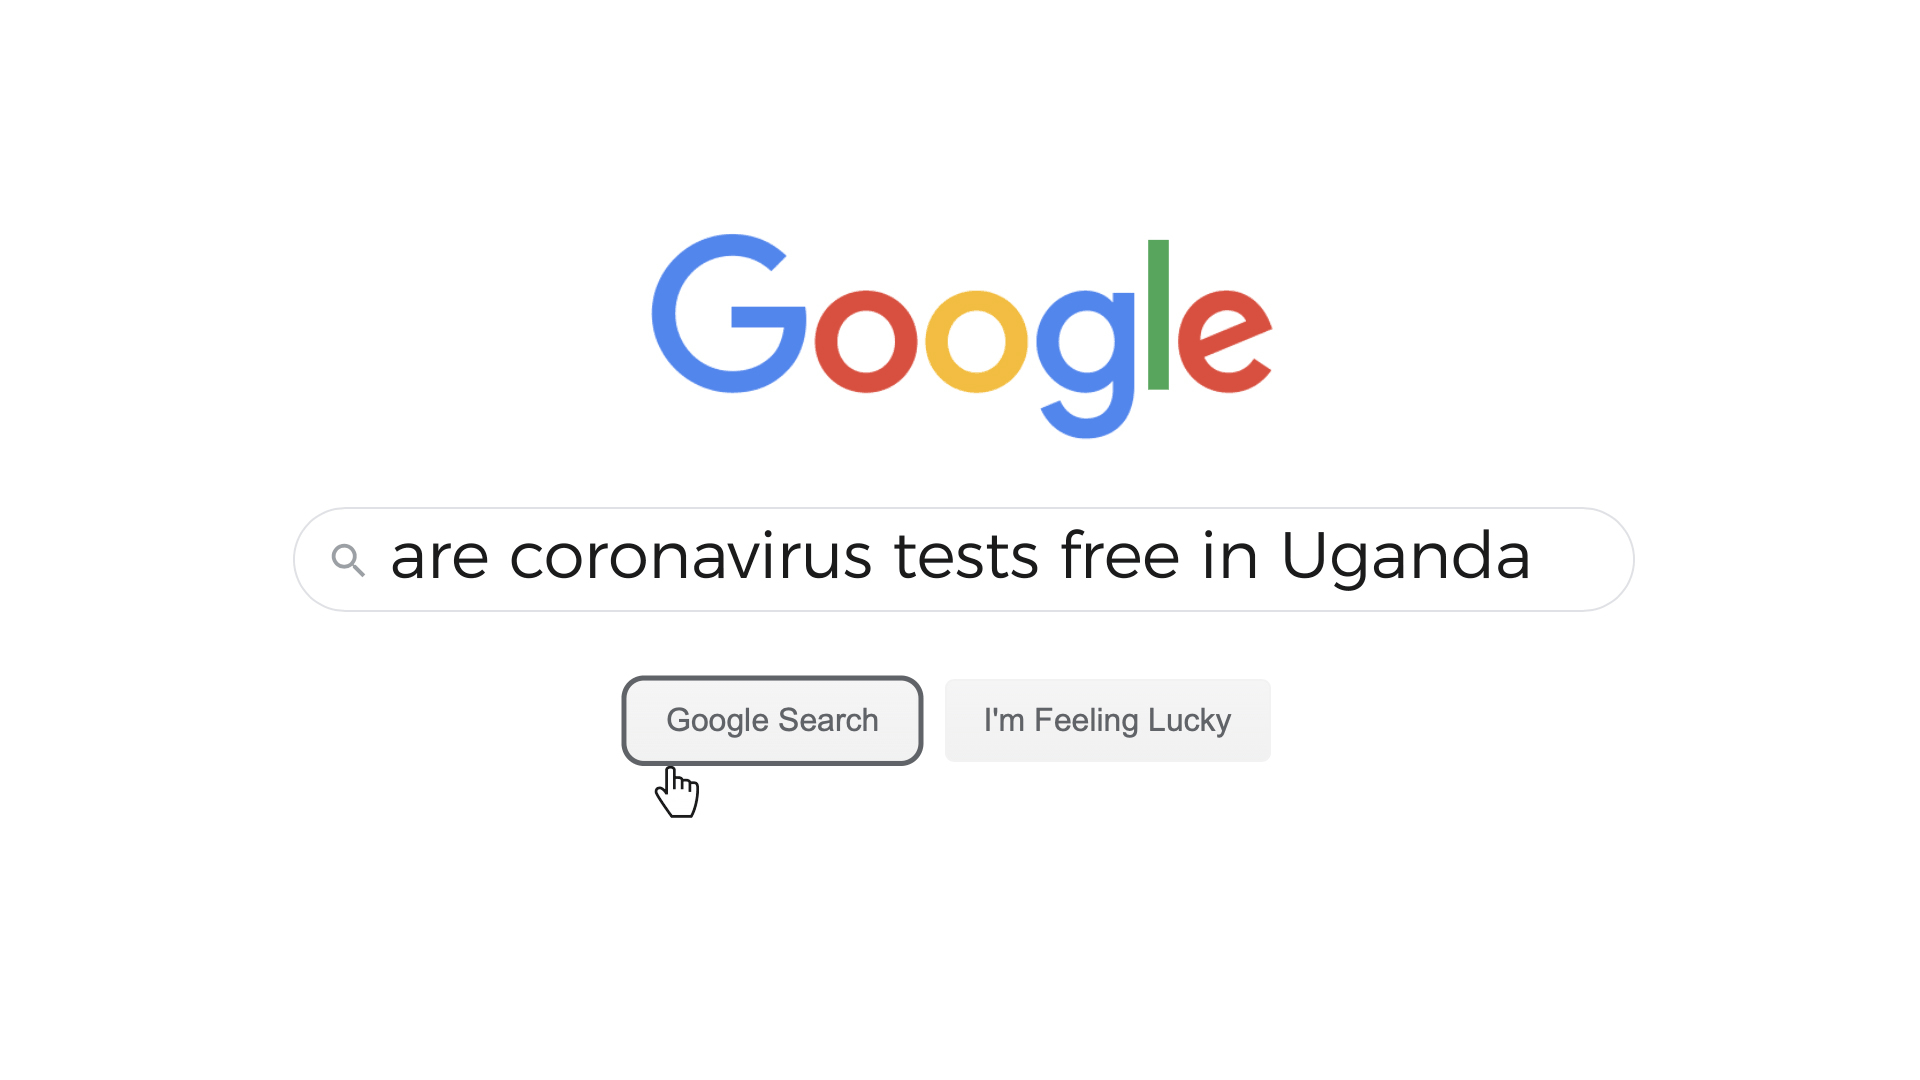 Whatsapp Africa South Africa Nigeria Covid-19 coronavirus Uganda